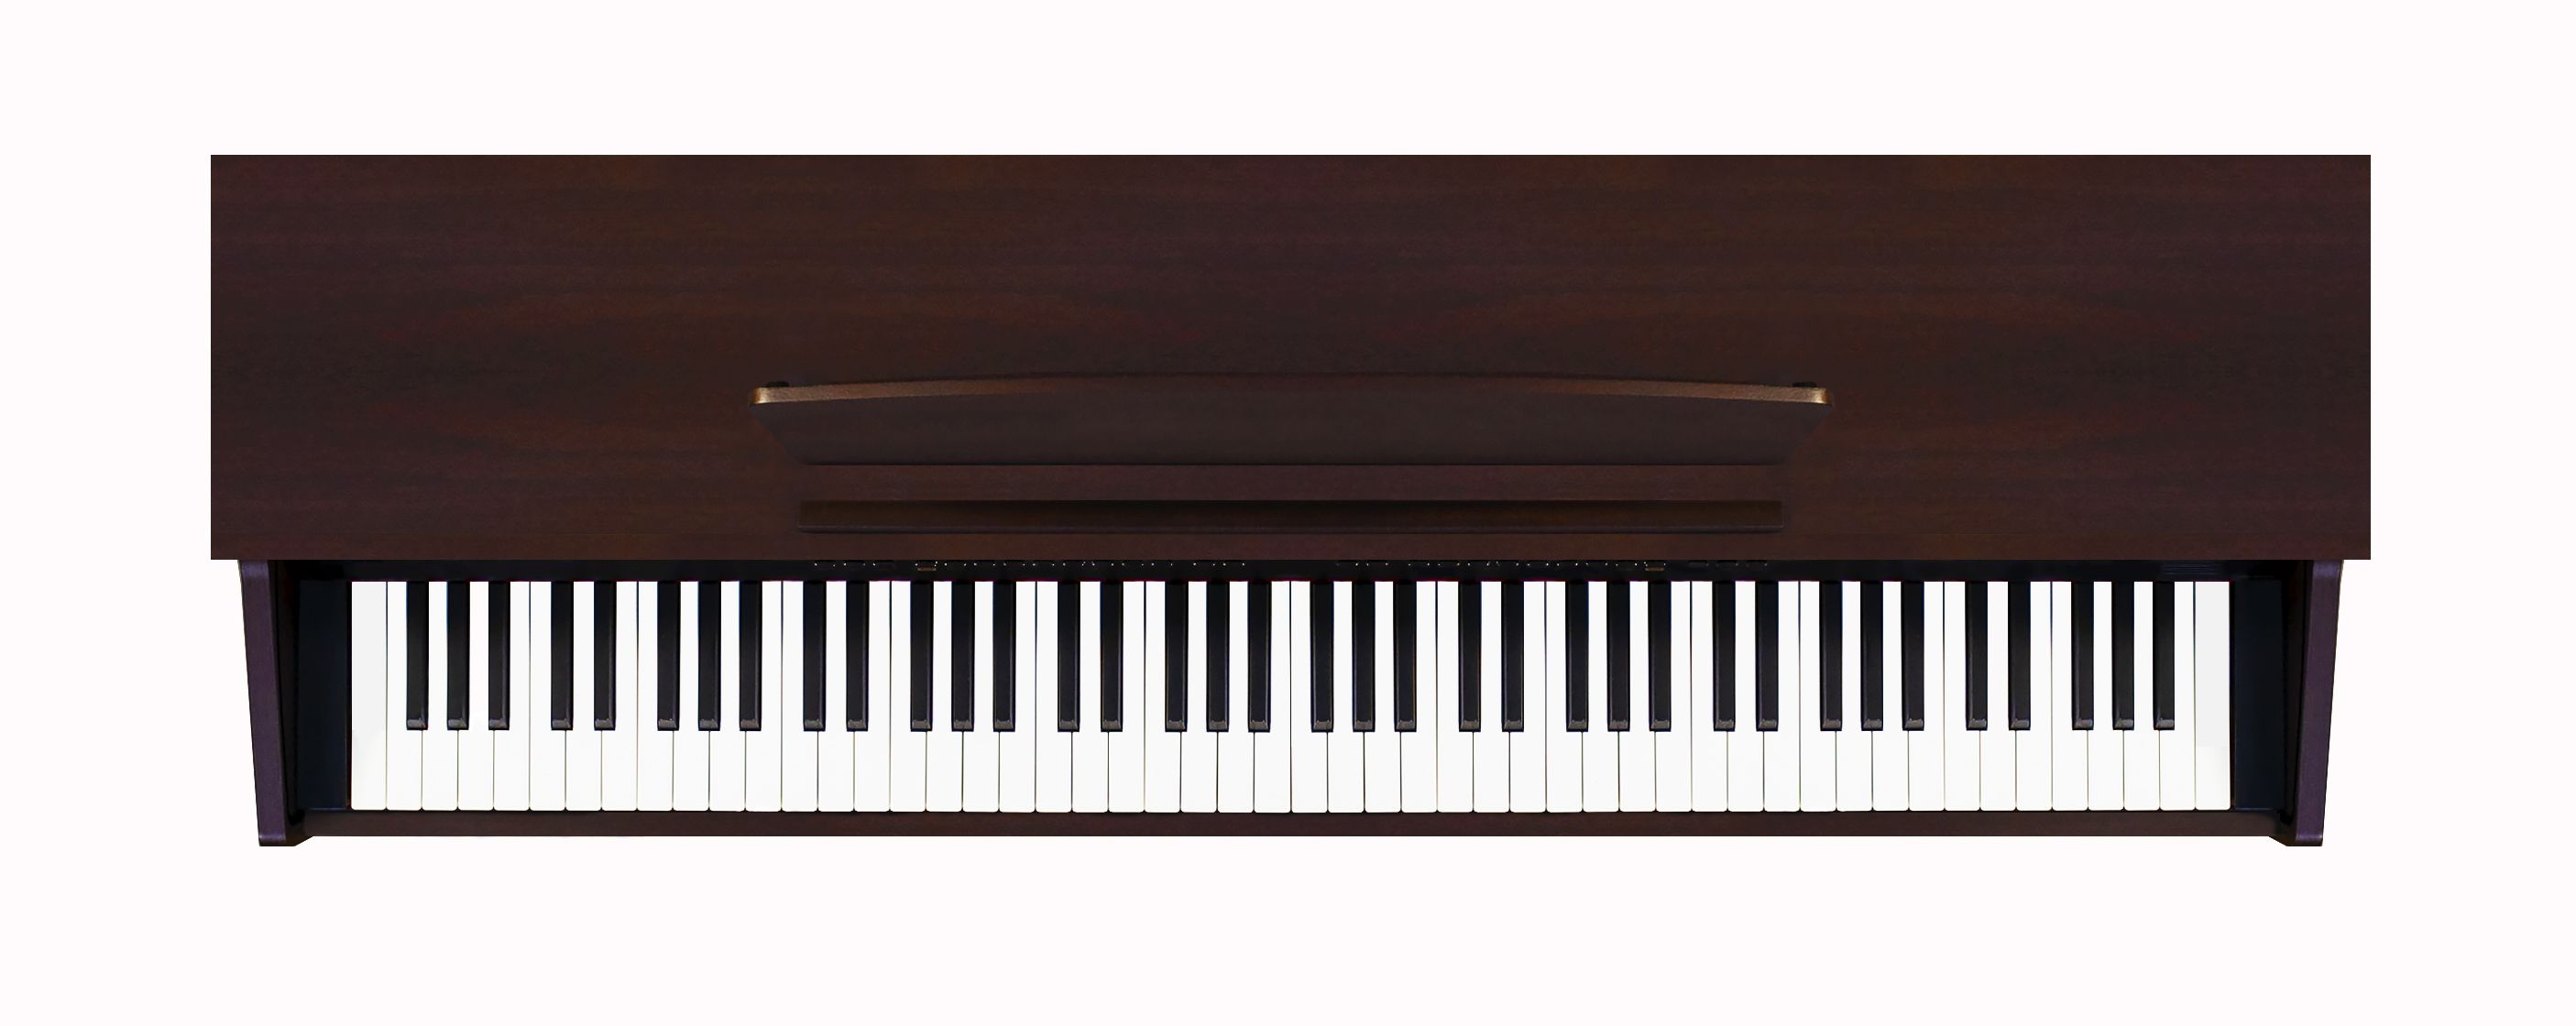 Картинка Цифровое пианино Becker BPP-22R - лучшая цена, доставка по России. Фото N3